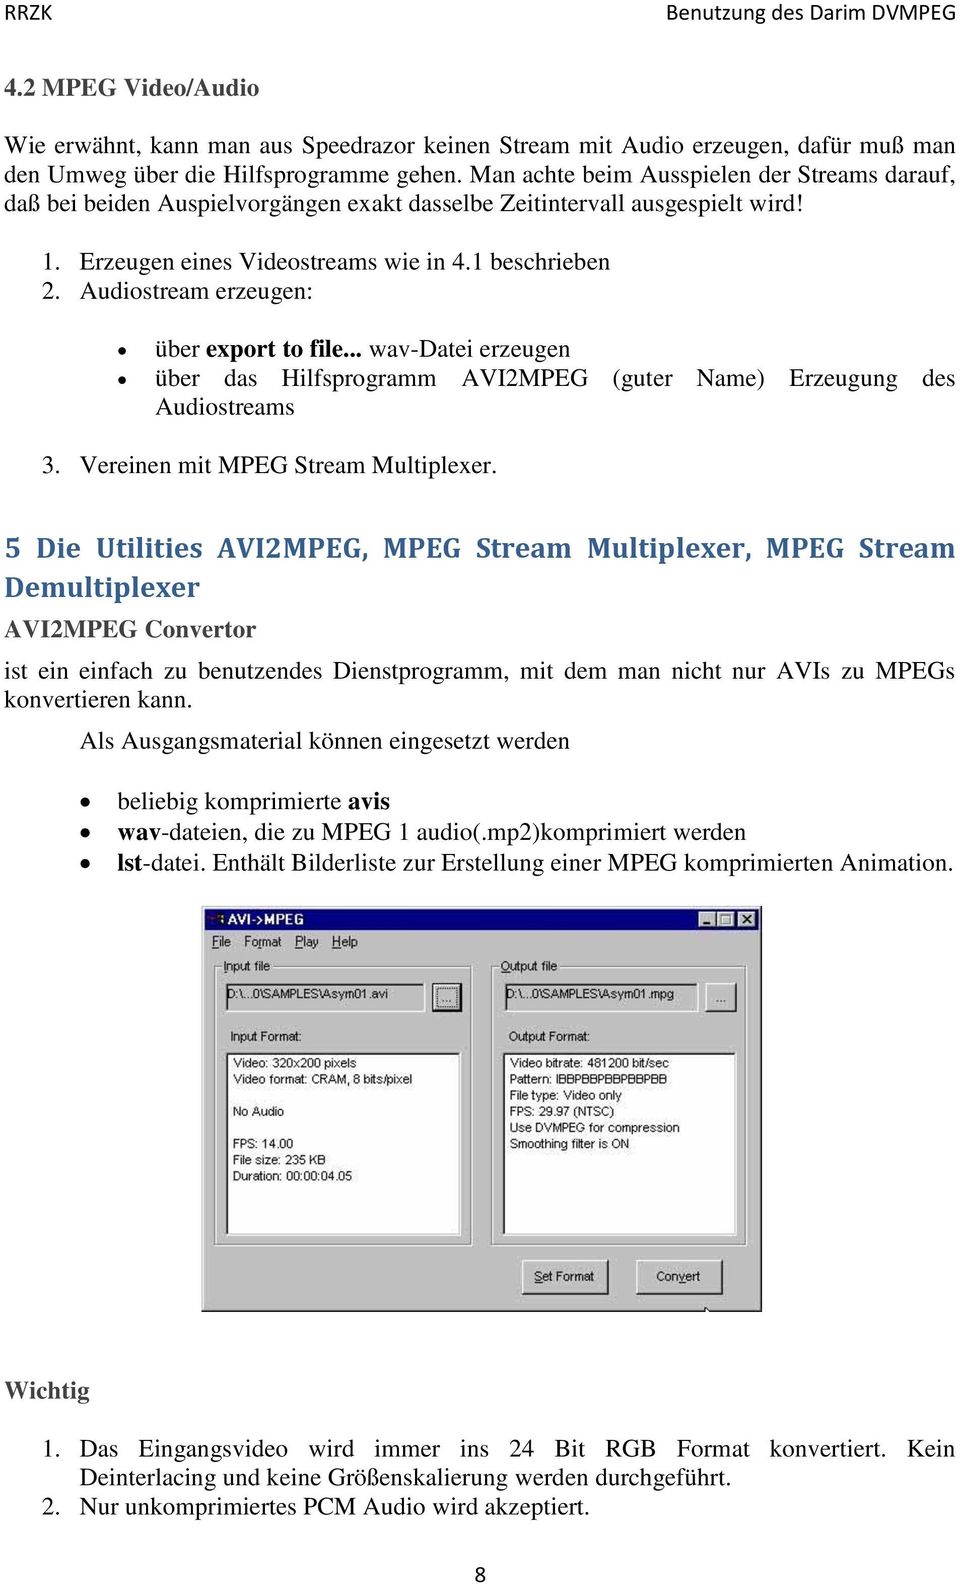 Audiostream erzeugen: über export to file... wav-datei erzeugen über das Hilfsprogramm AVI2MPEG (guter Name) Erzeugung des Audiostreams 3. Vereinen mit MPEG Stream Multiplexer.